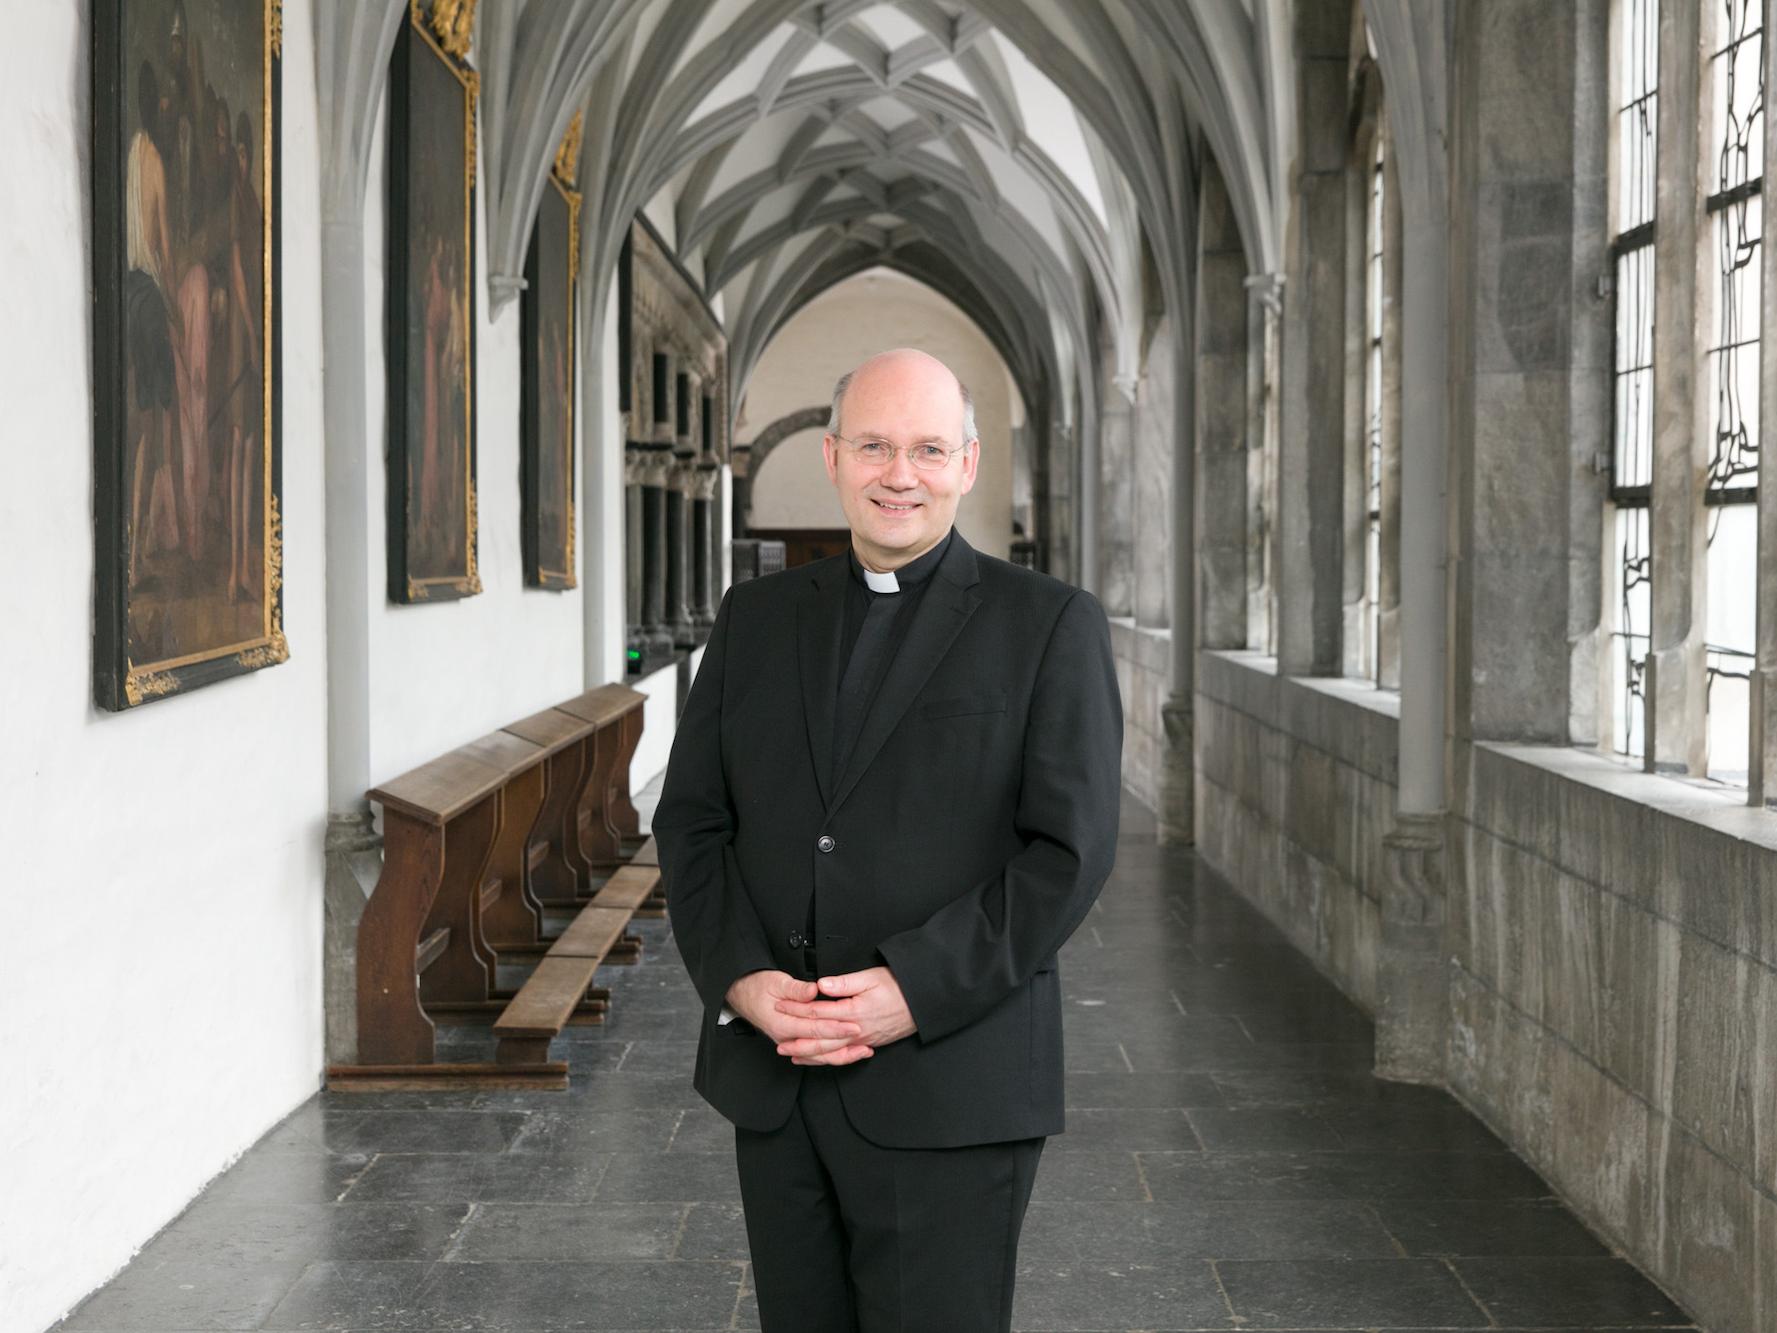 Kritisch, nicht verurteilend (c) Bistum Aachen/Carl Brunn